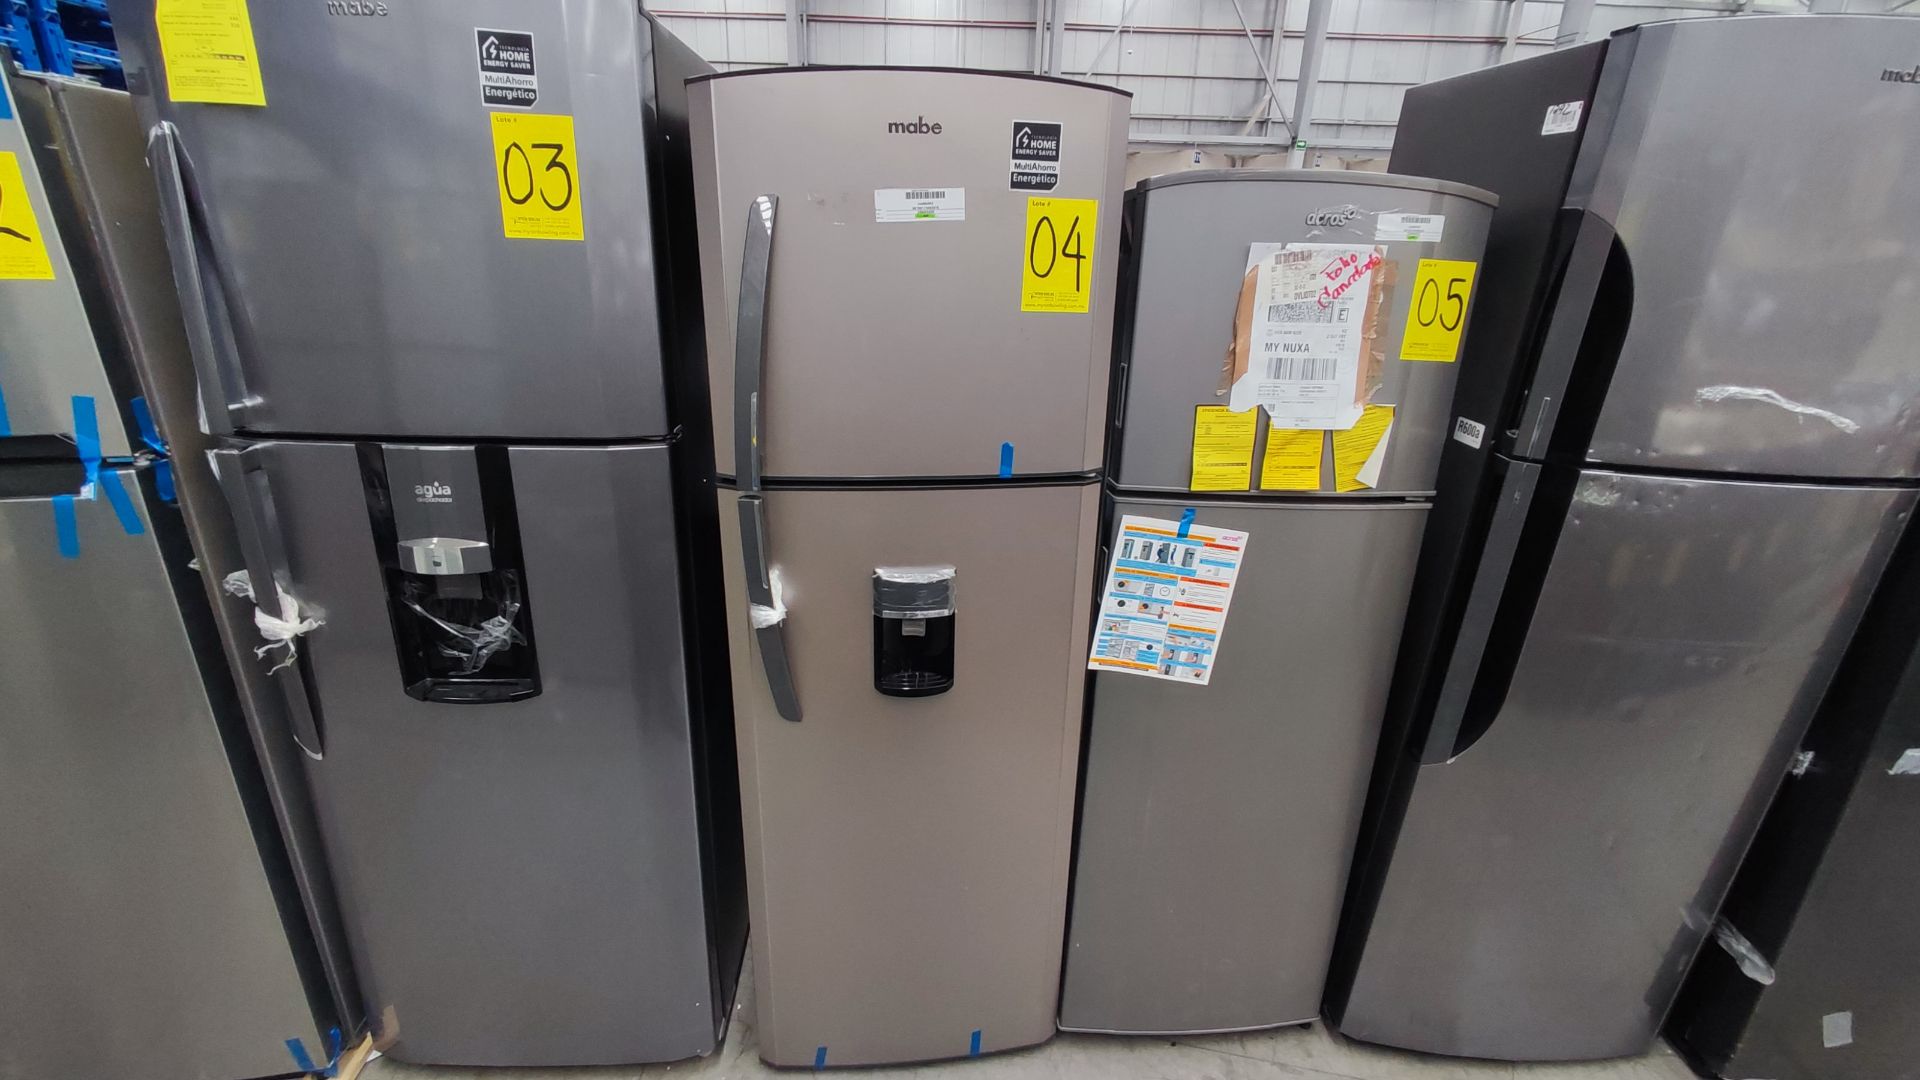 1 Refrigerador Marca Mabe, Modelo RMA300FJRM, Serie 2111B7011524, Color Gris Detalles Estéticos. Fa